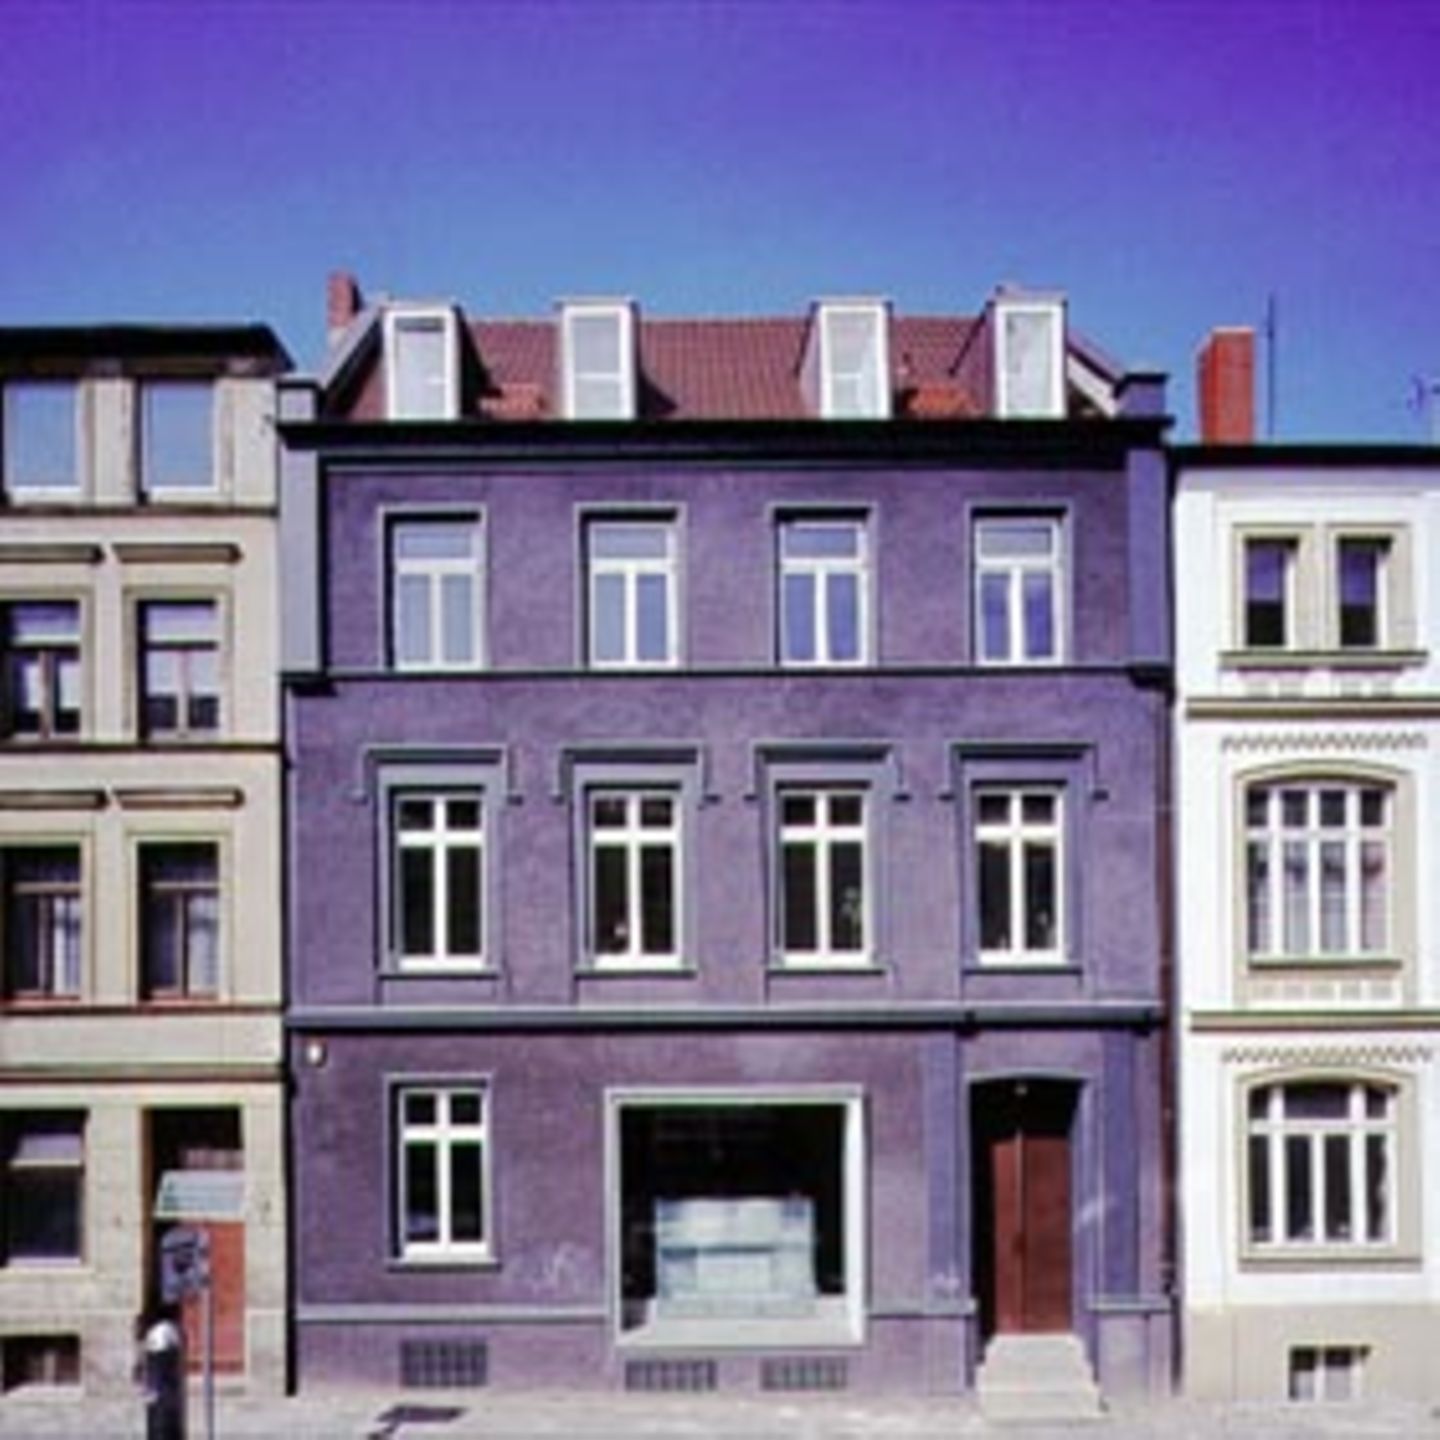 Sein Atelierhaus in Schwerin baute Jäger markant um, konstrastierte den Bestand mit neuen Teilen.